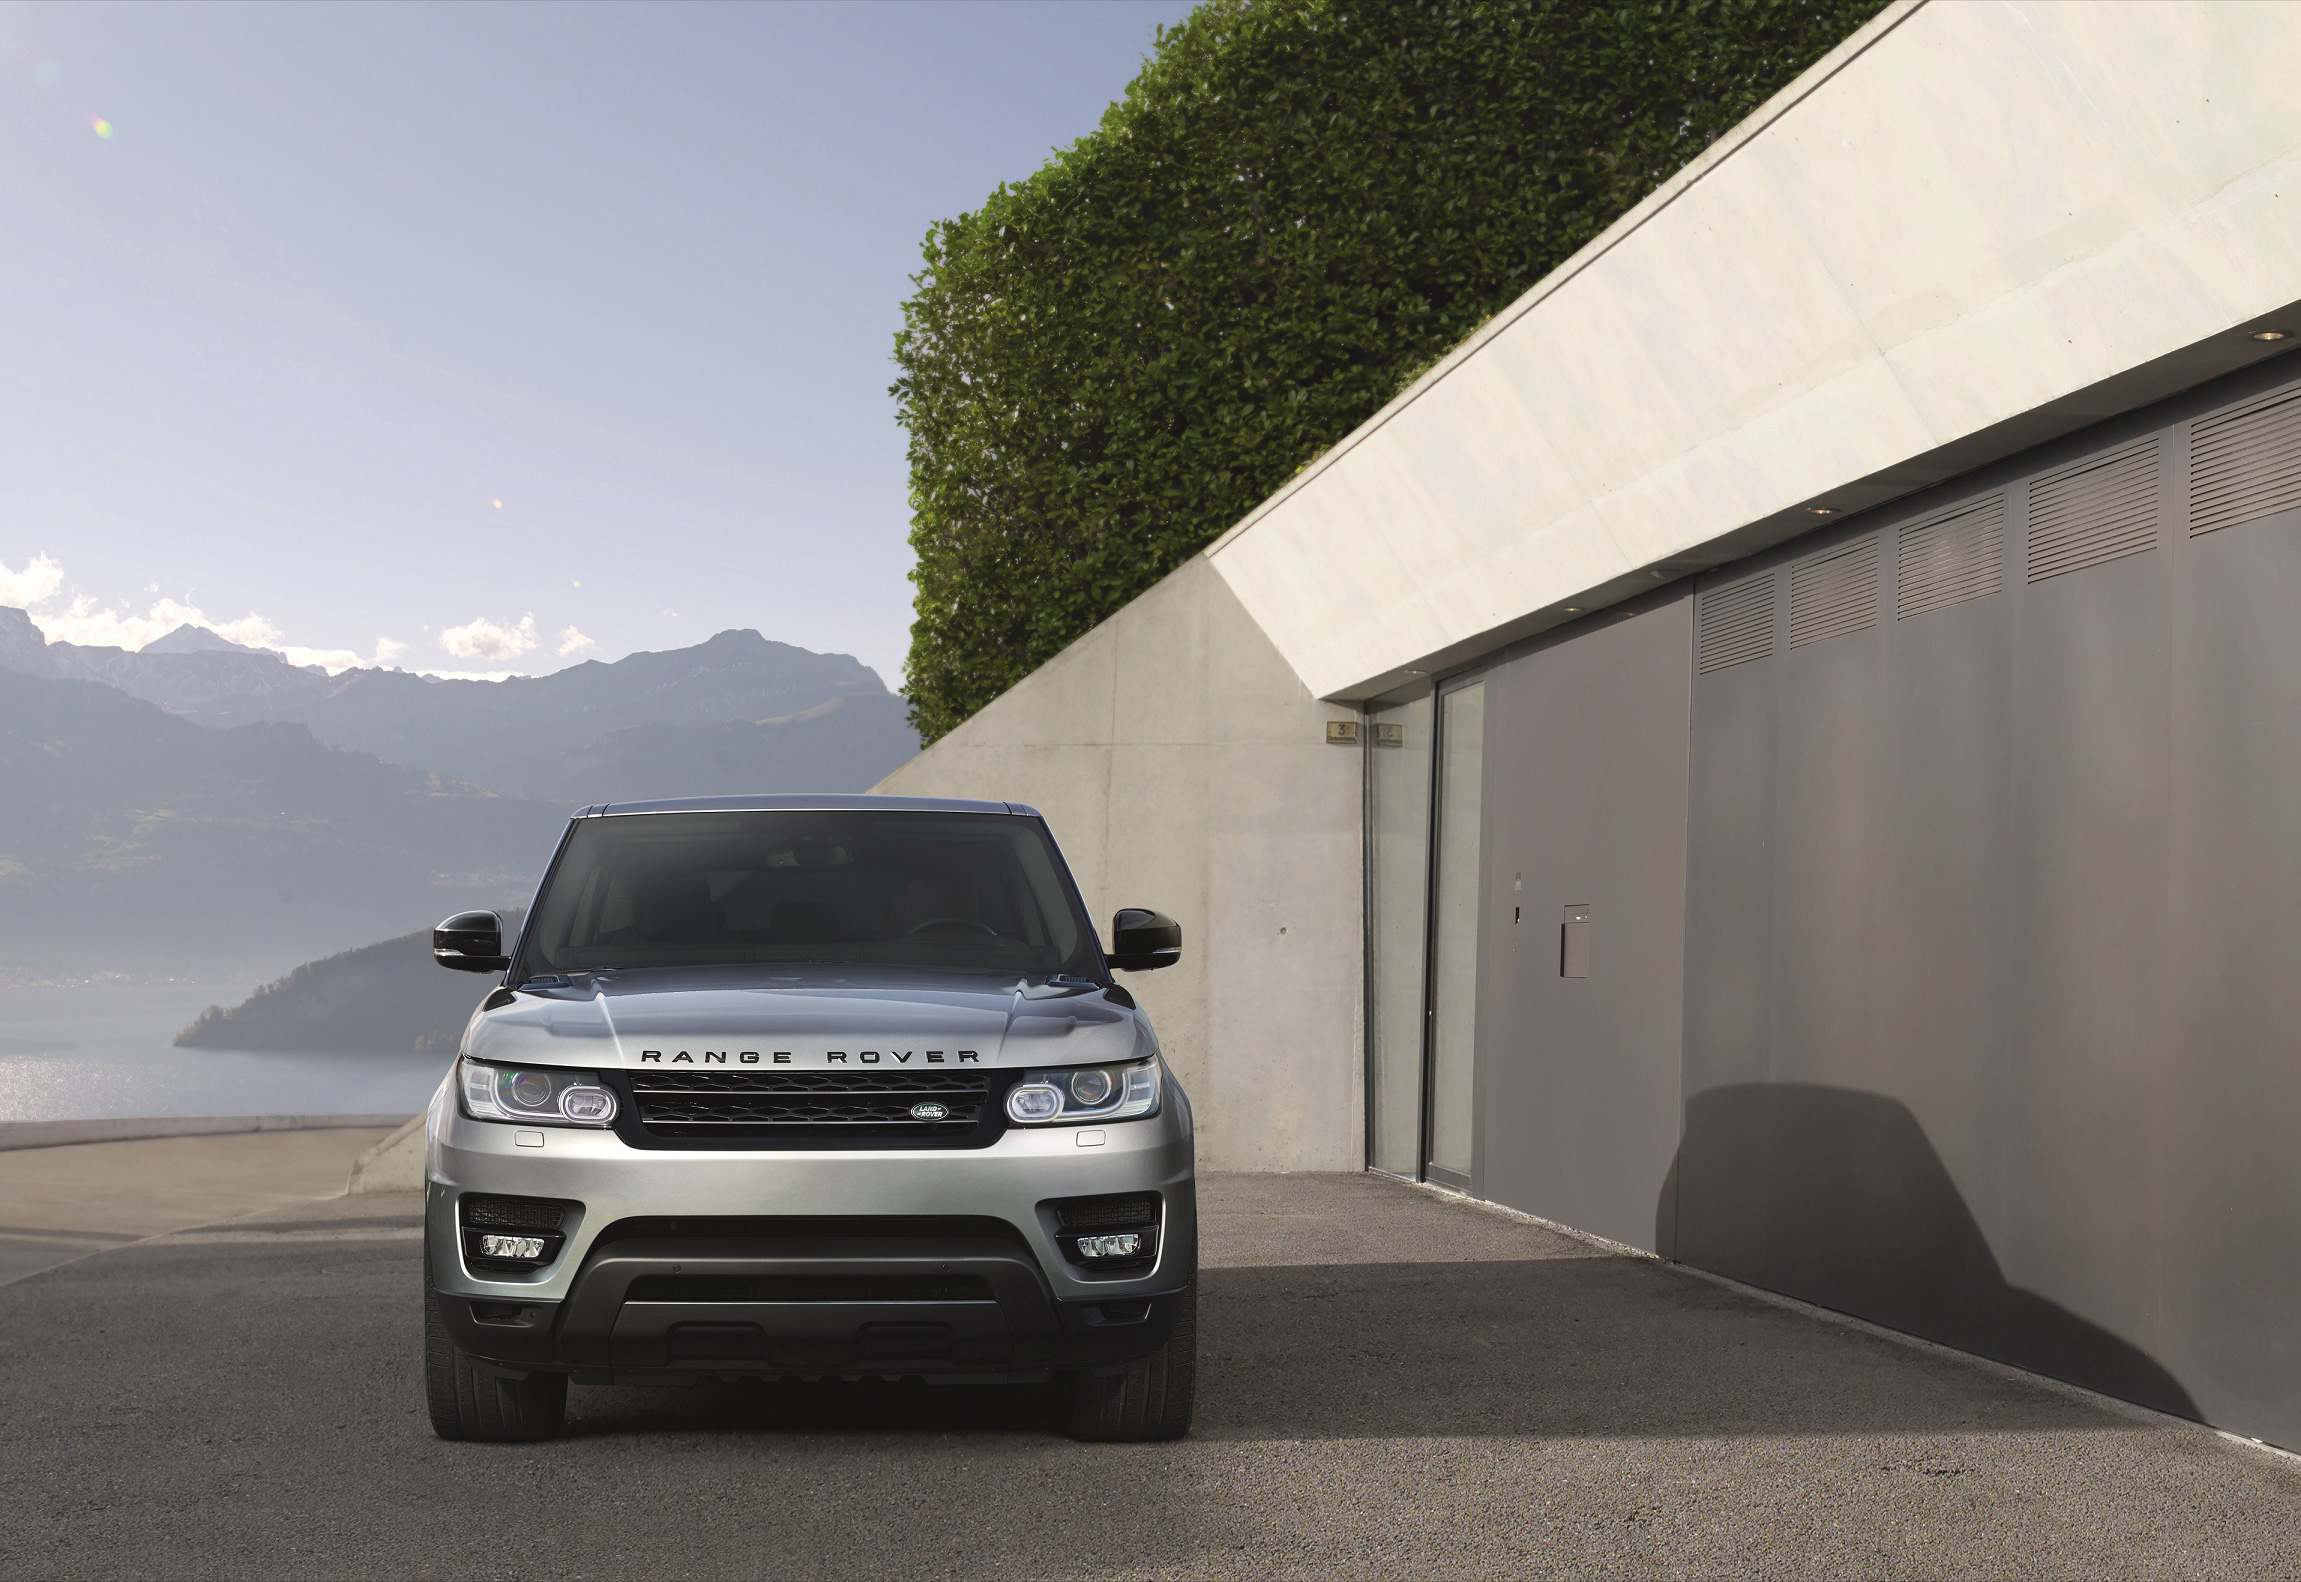 2017-Range-Rover-Sport-exterior-(5).jpg